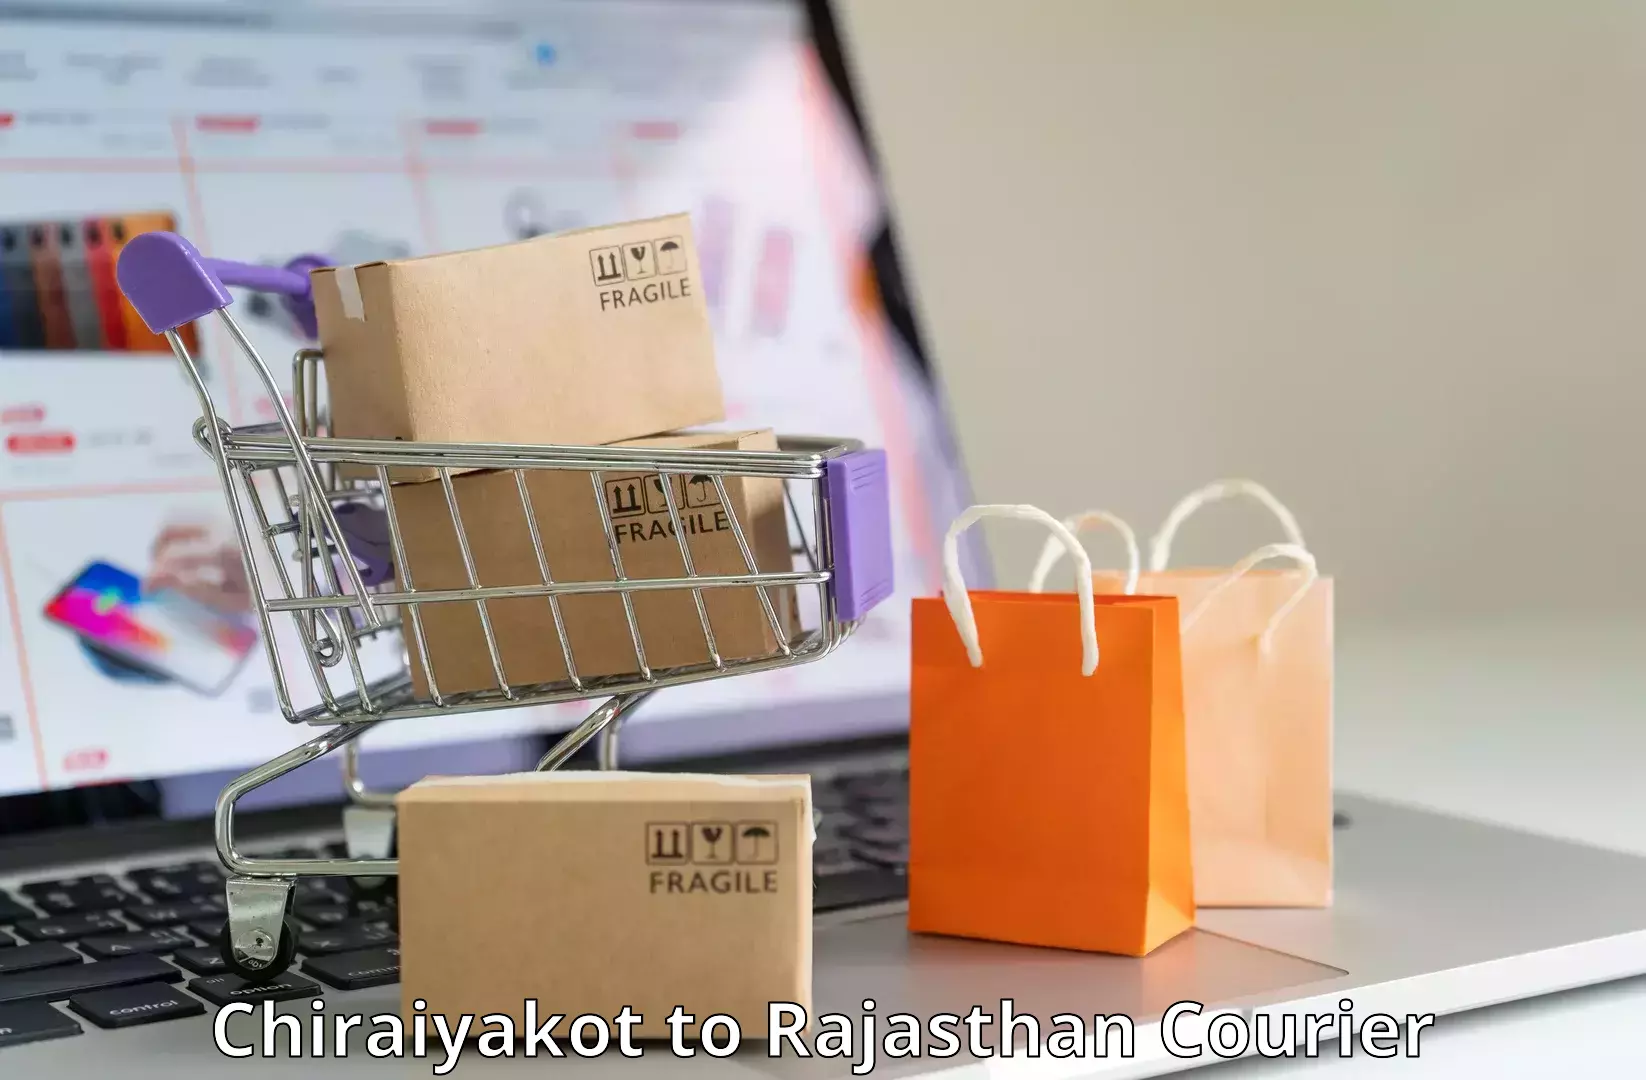 High-capacity parcel service Chiraiyakot to Deshnok